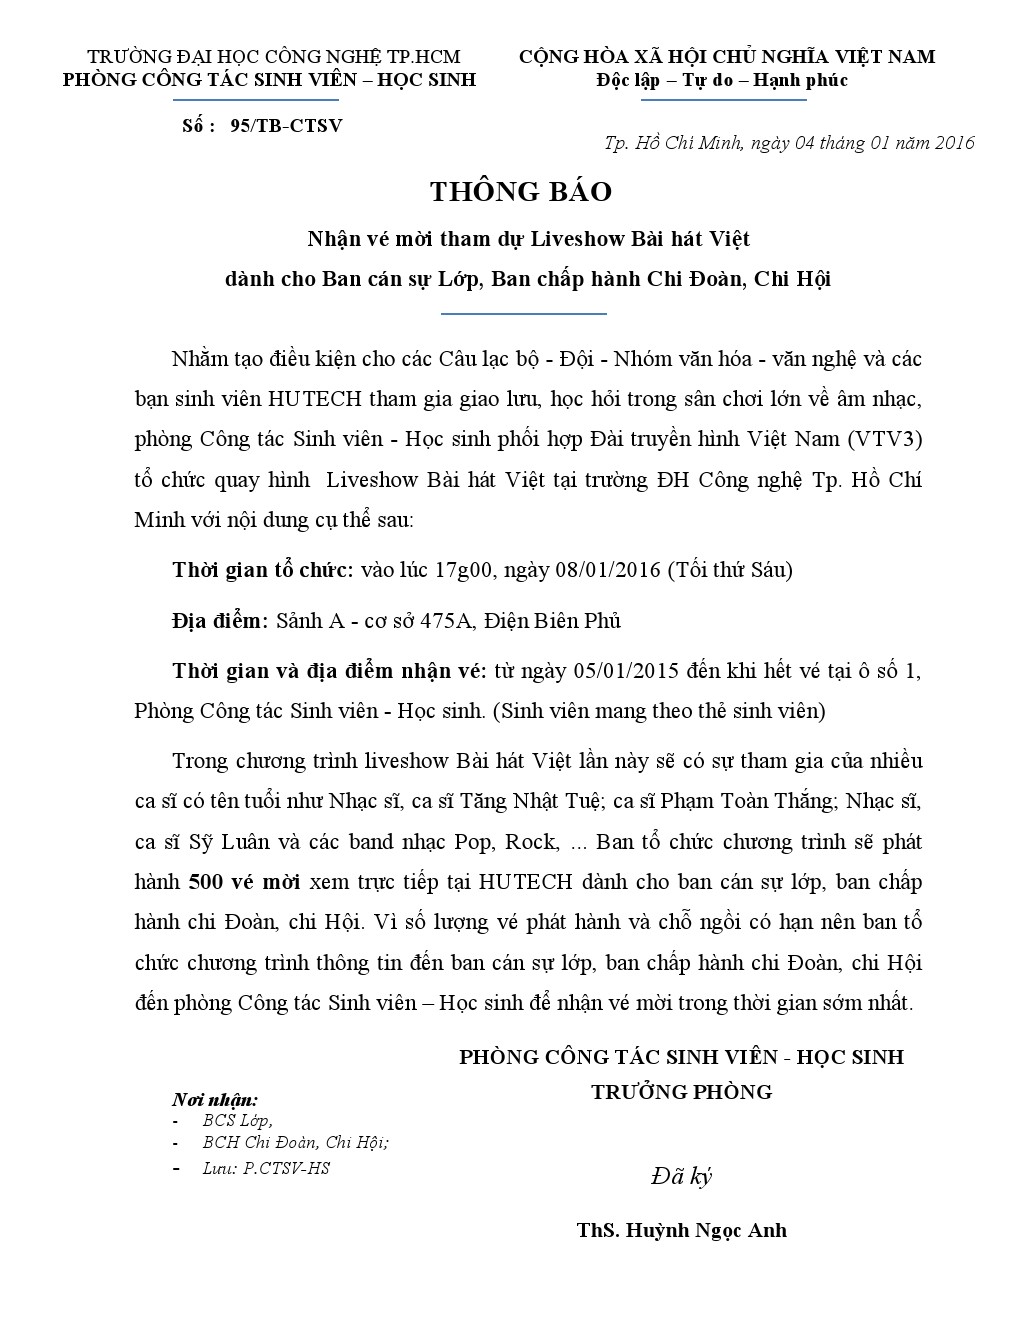 Thông báo 95/TB-CTSV nhận vé mời tham dự liveshow Bài hát Việt 2